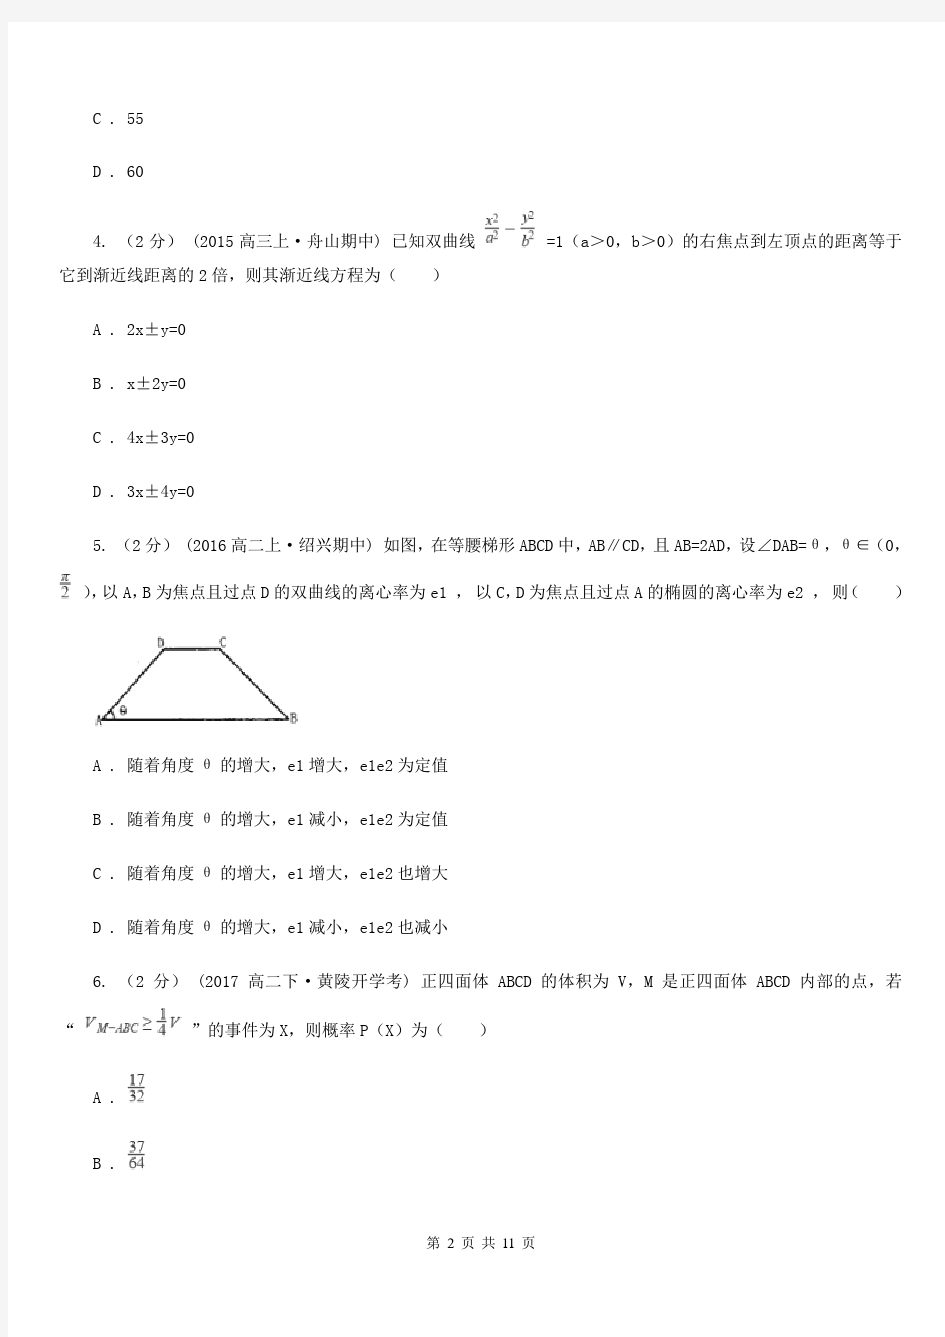 广州市高二上学期期末数学试卷(理科)(II)卷